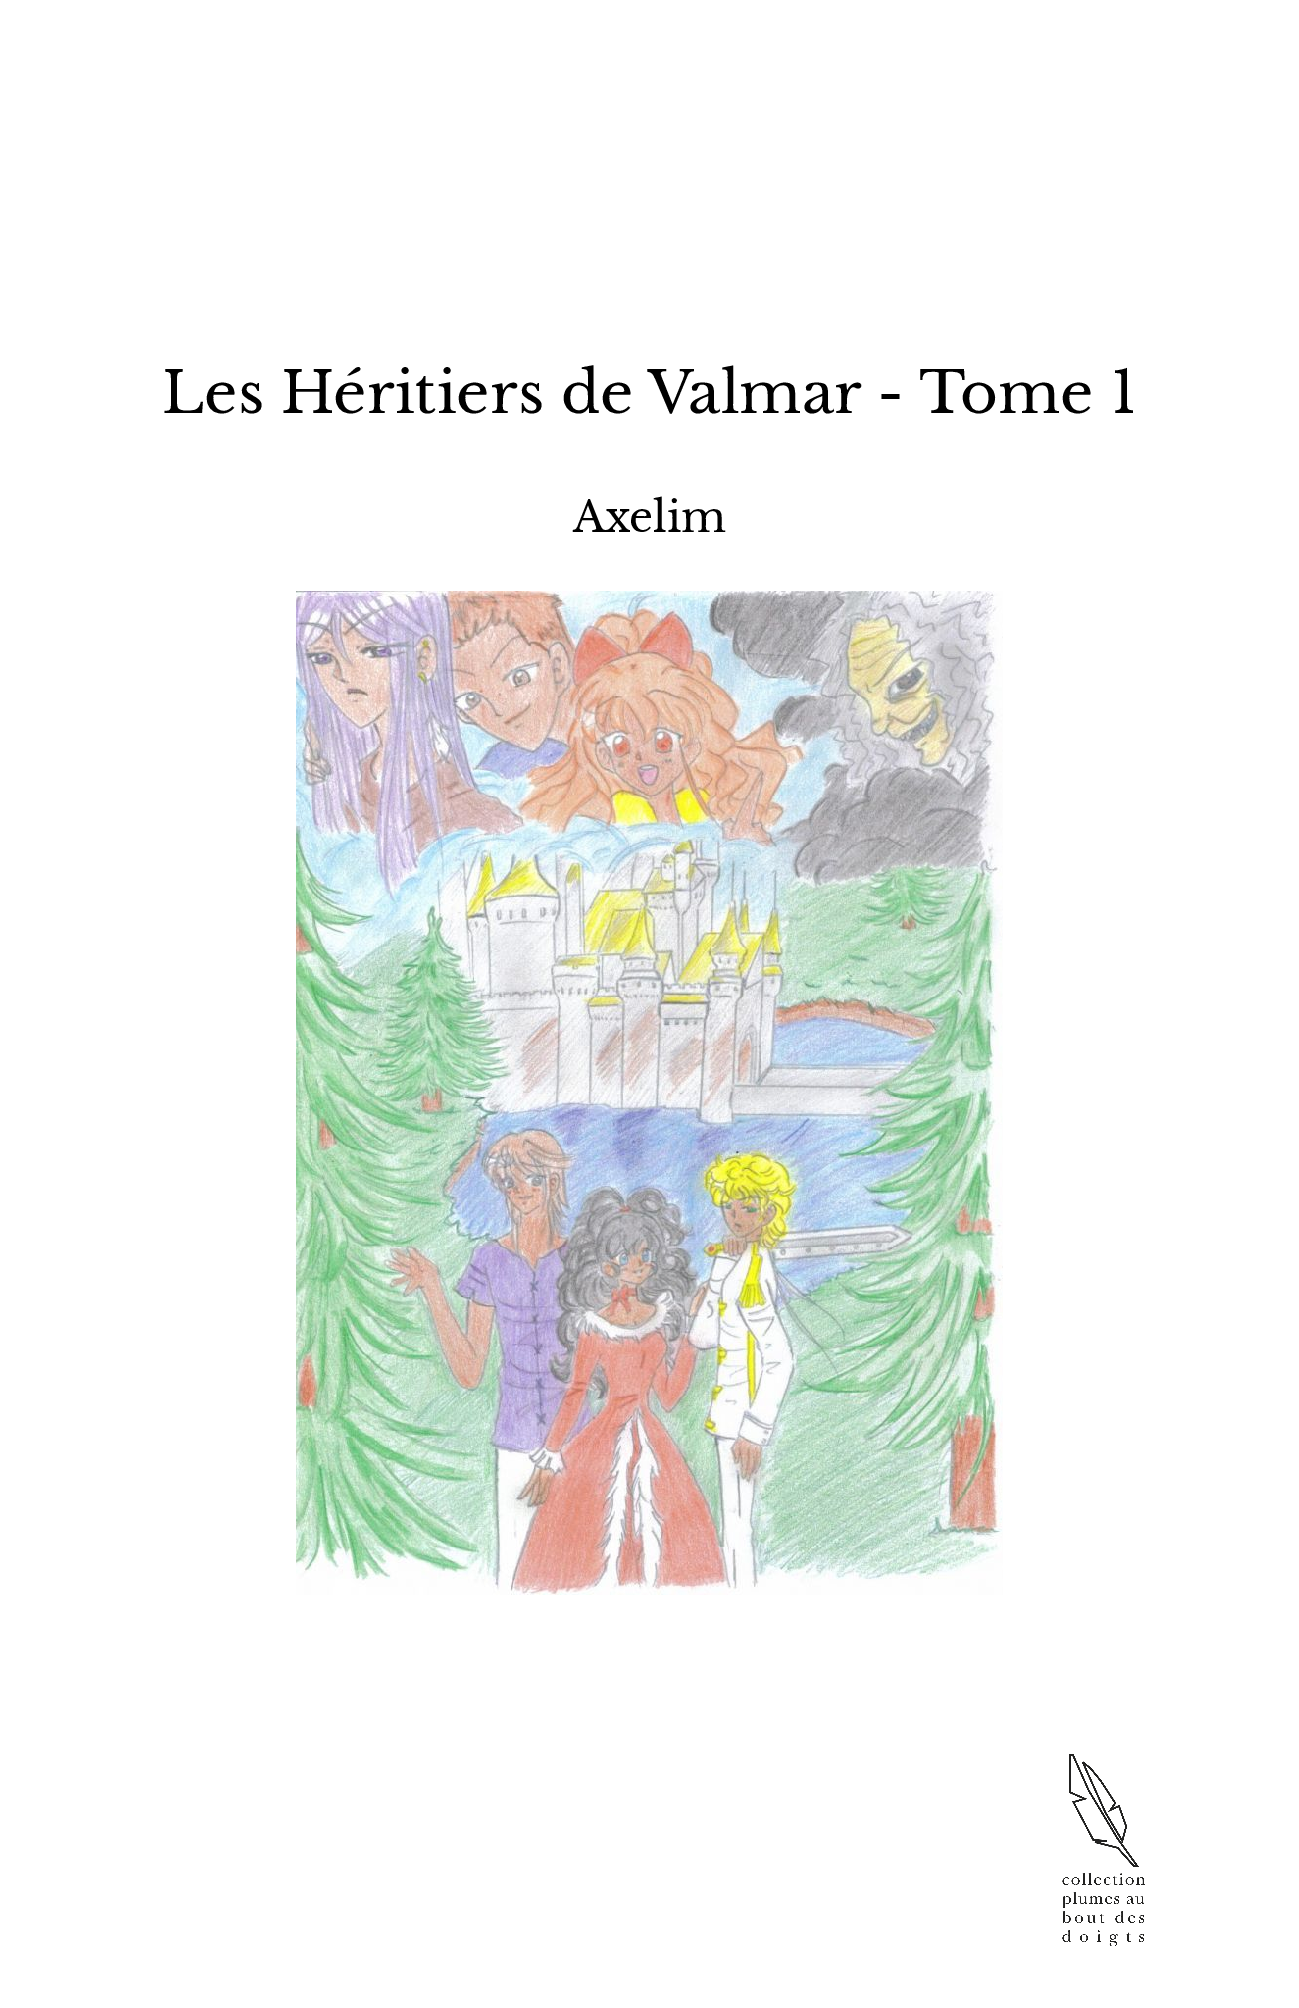 Les Héritiers de Valmar - Tome 1